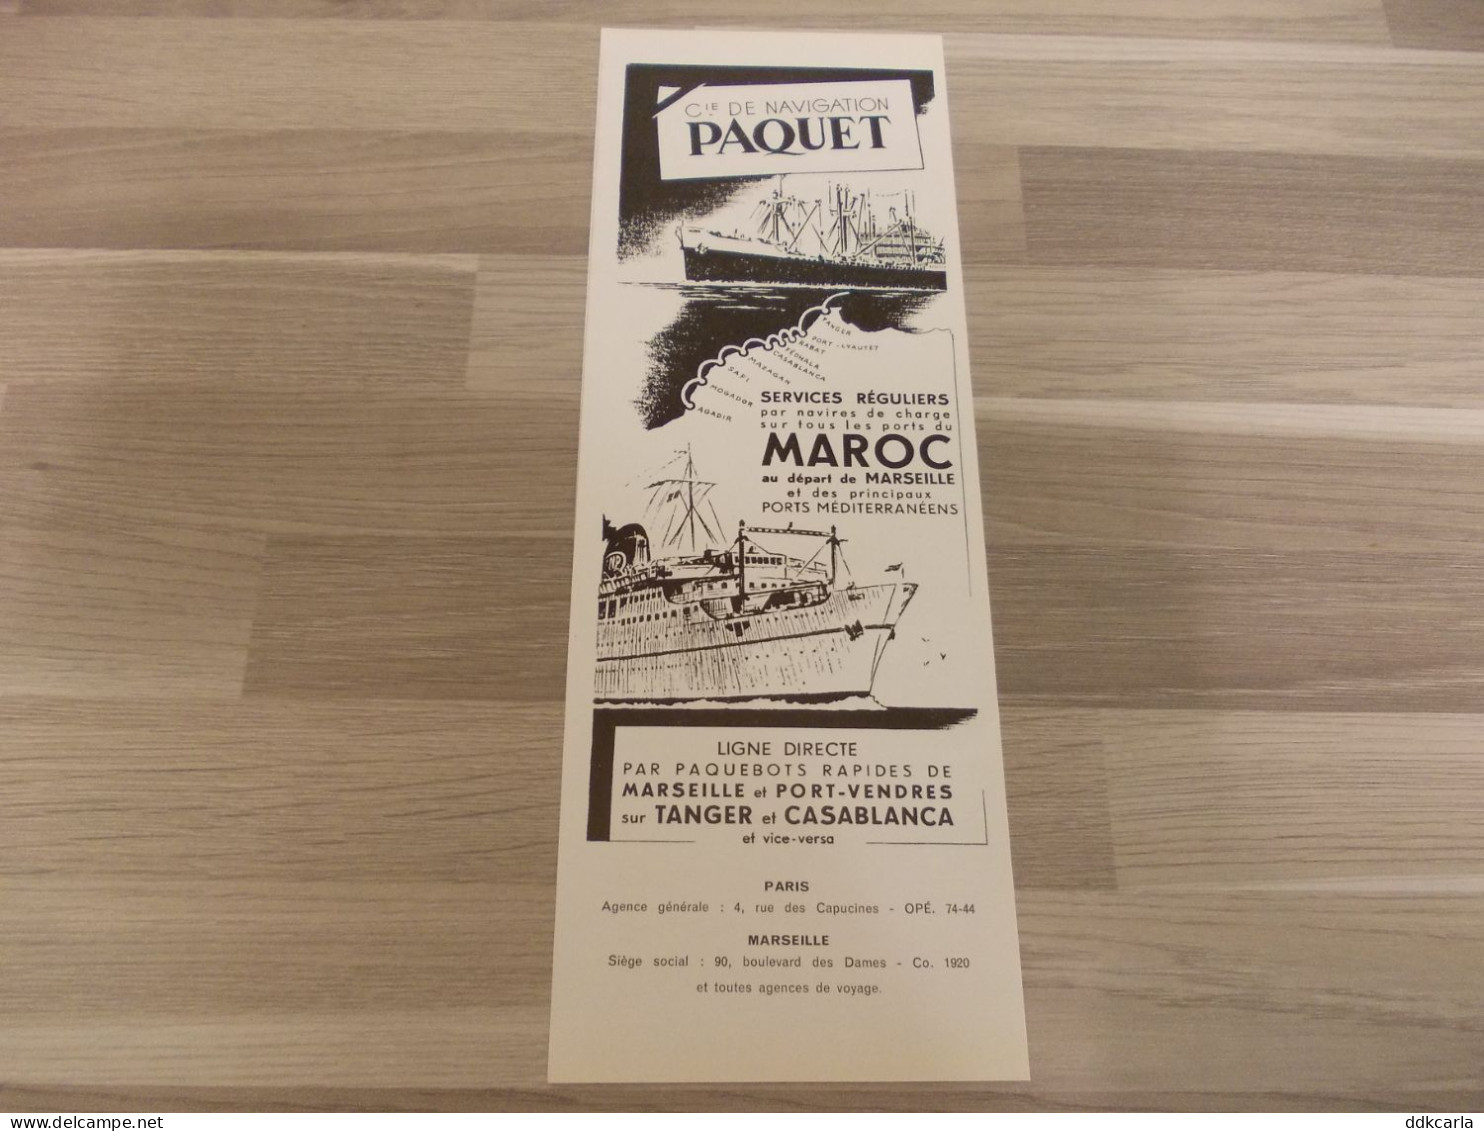 Reclame Advertentie Uit Oud Tijdschrift 1952 - Cie De Navigation Paquet - Publicidad